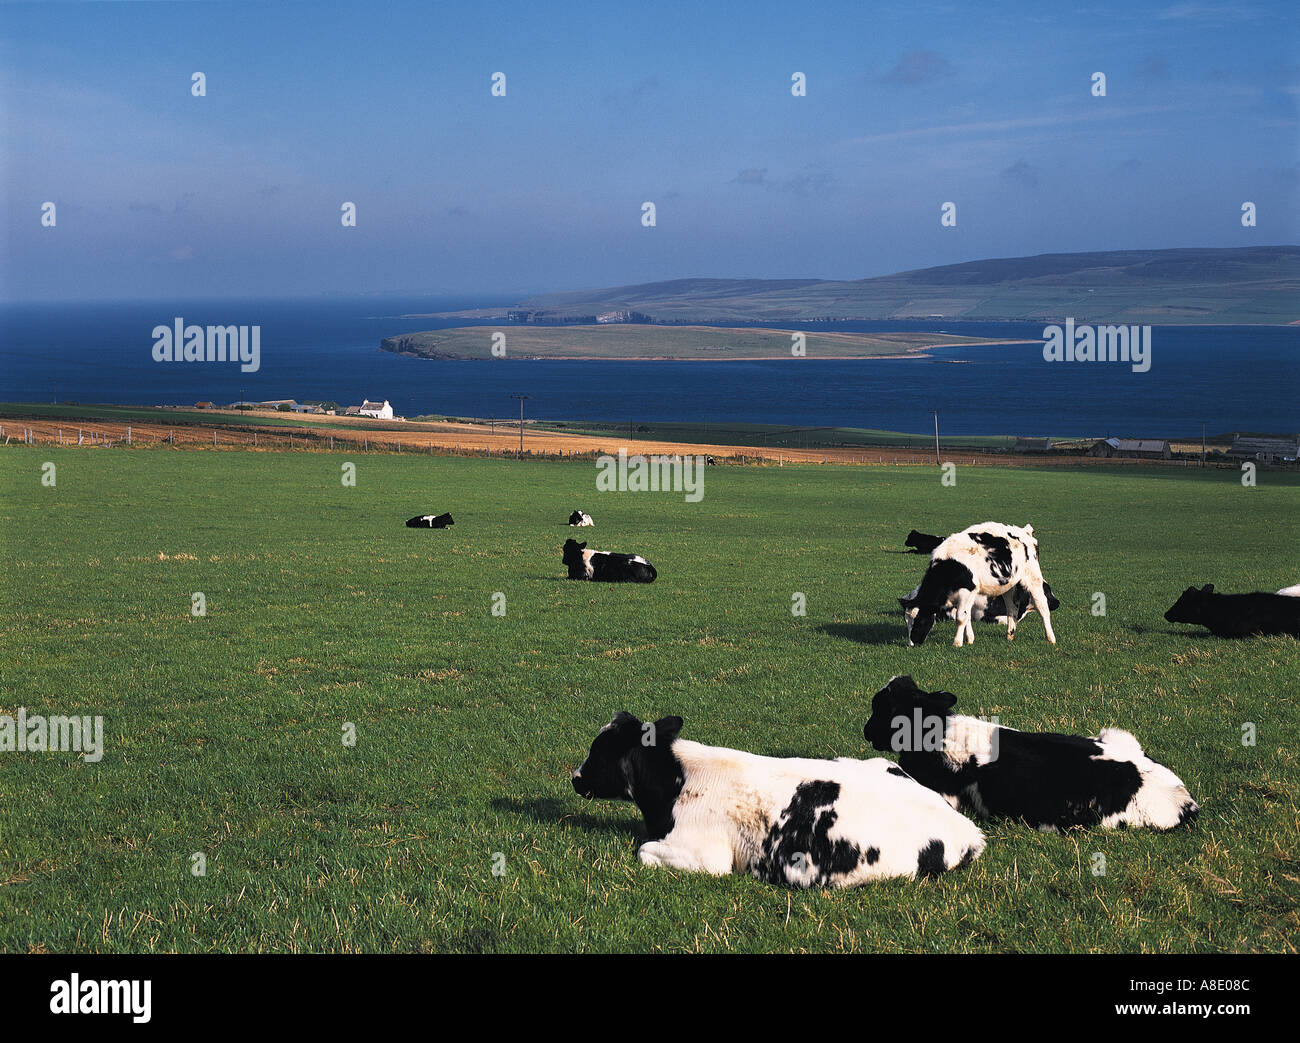 dh bovins laitiers fronésiens EVIE UK UN troupeau de vaches écossais Pâturage dans les champs les vaches d'Écosse s'assoient sur l'herbe Eynhallow Sons bleu ciel vert champs Banque D'Images